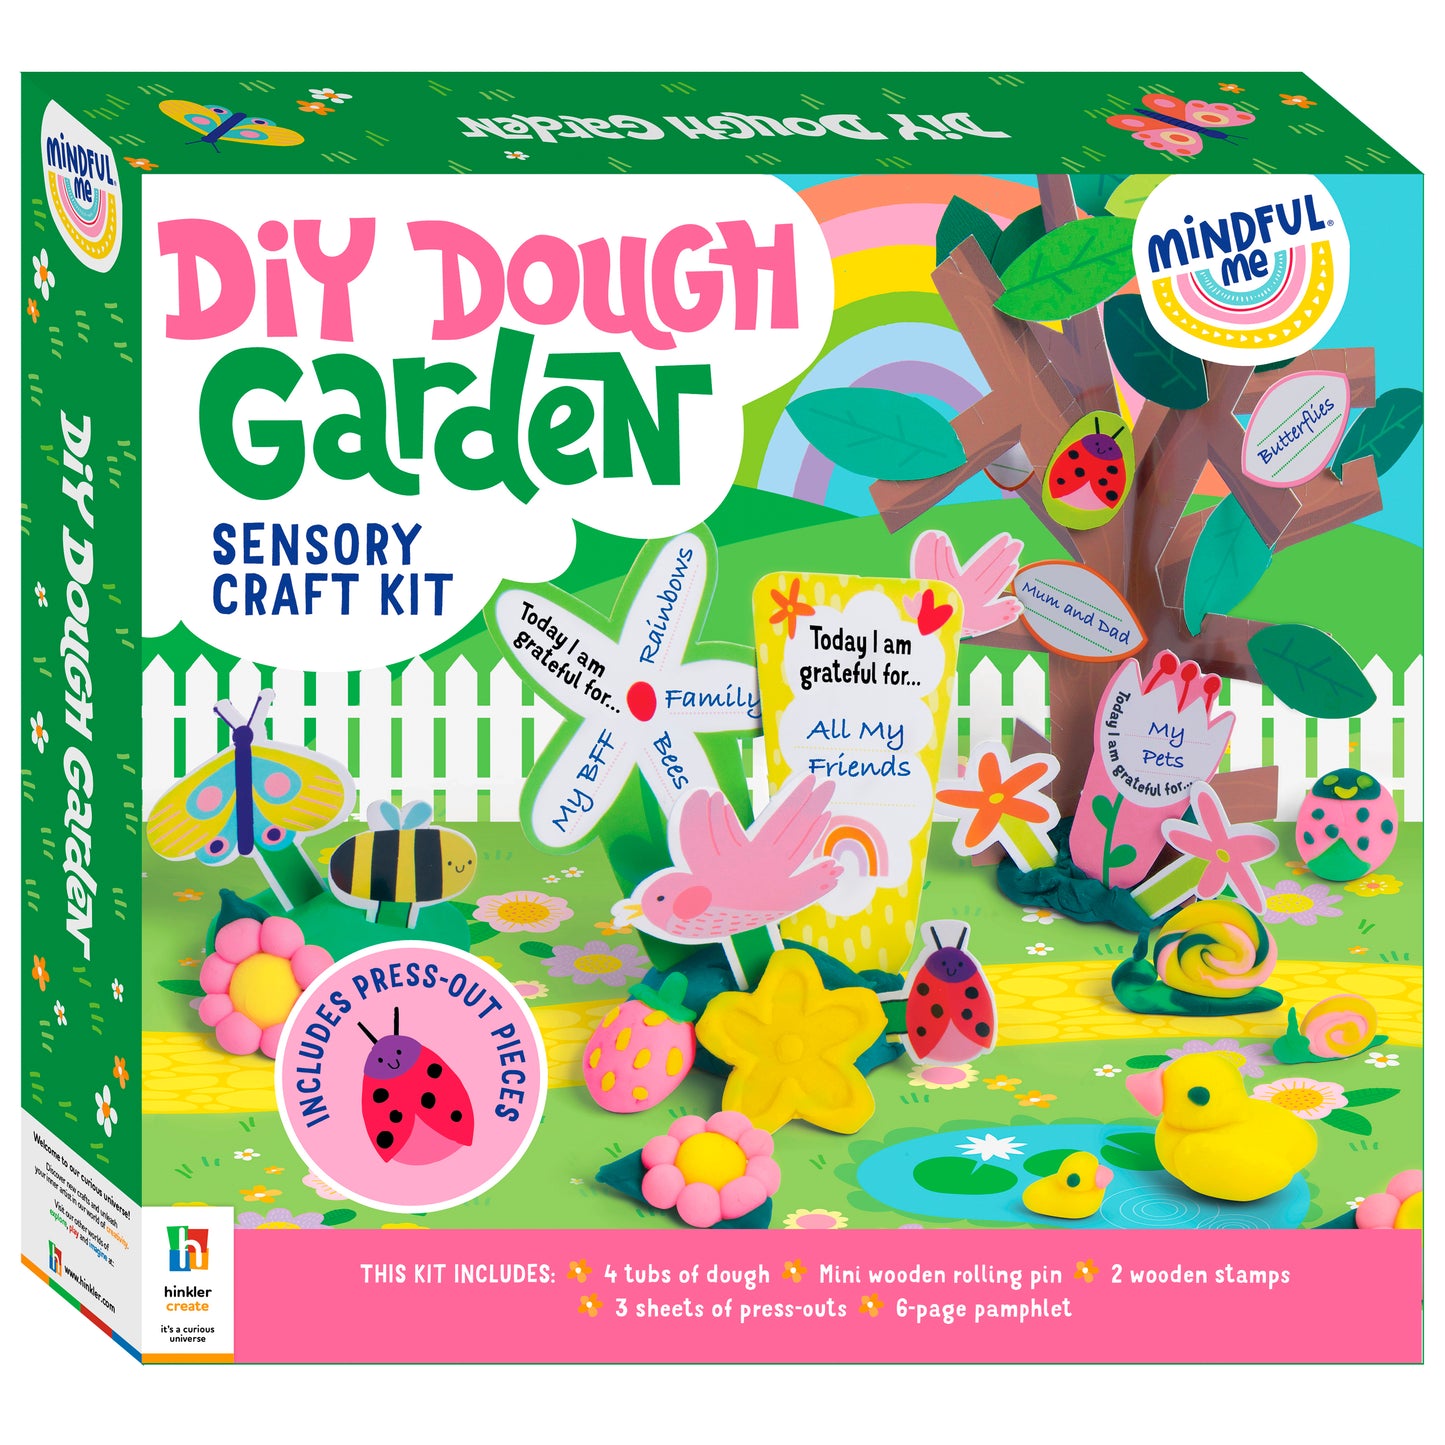 DIY Dough Garden Sensory Craft Kit